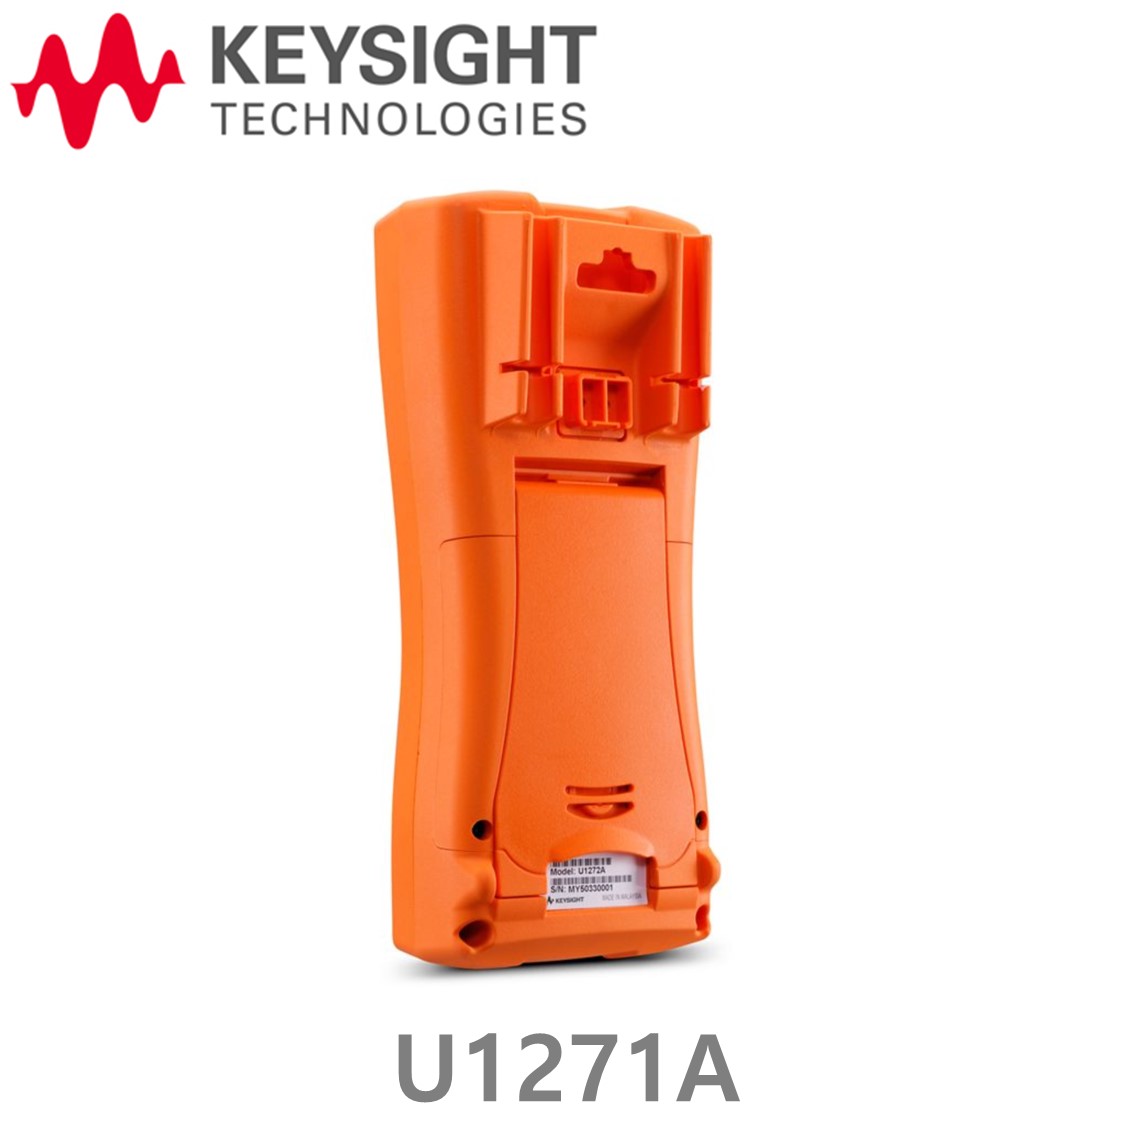 [ KEYSIGHT U1271A ] 키사이트 4.5digit 휴대형 디지털 멀티미터 ( 방수, 방진 IP54 )